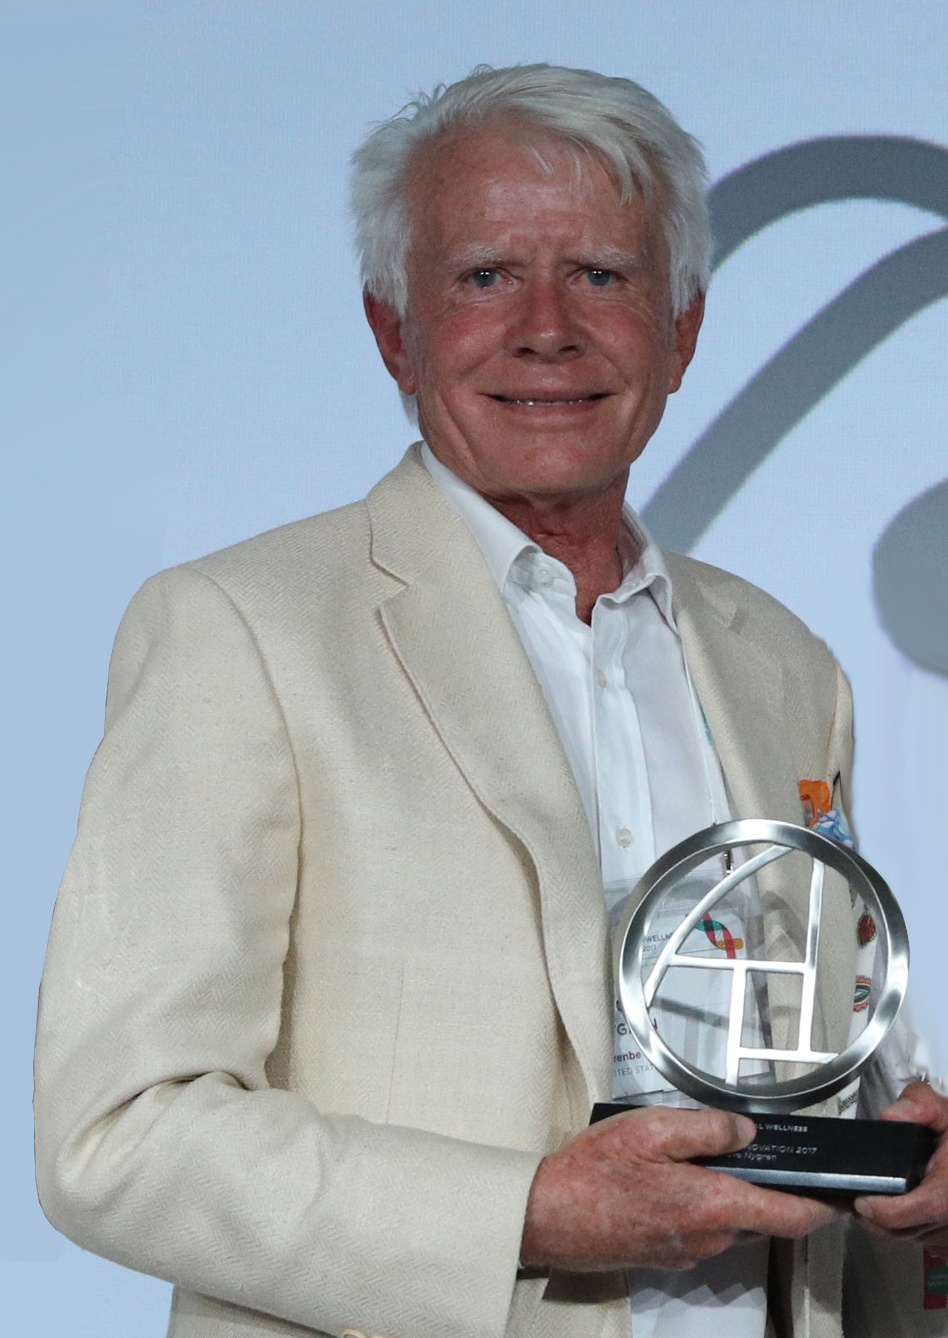 2017 Global Wellness Award - Leader in Innovation: Steve Nygren, Co-founder of Serenbe